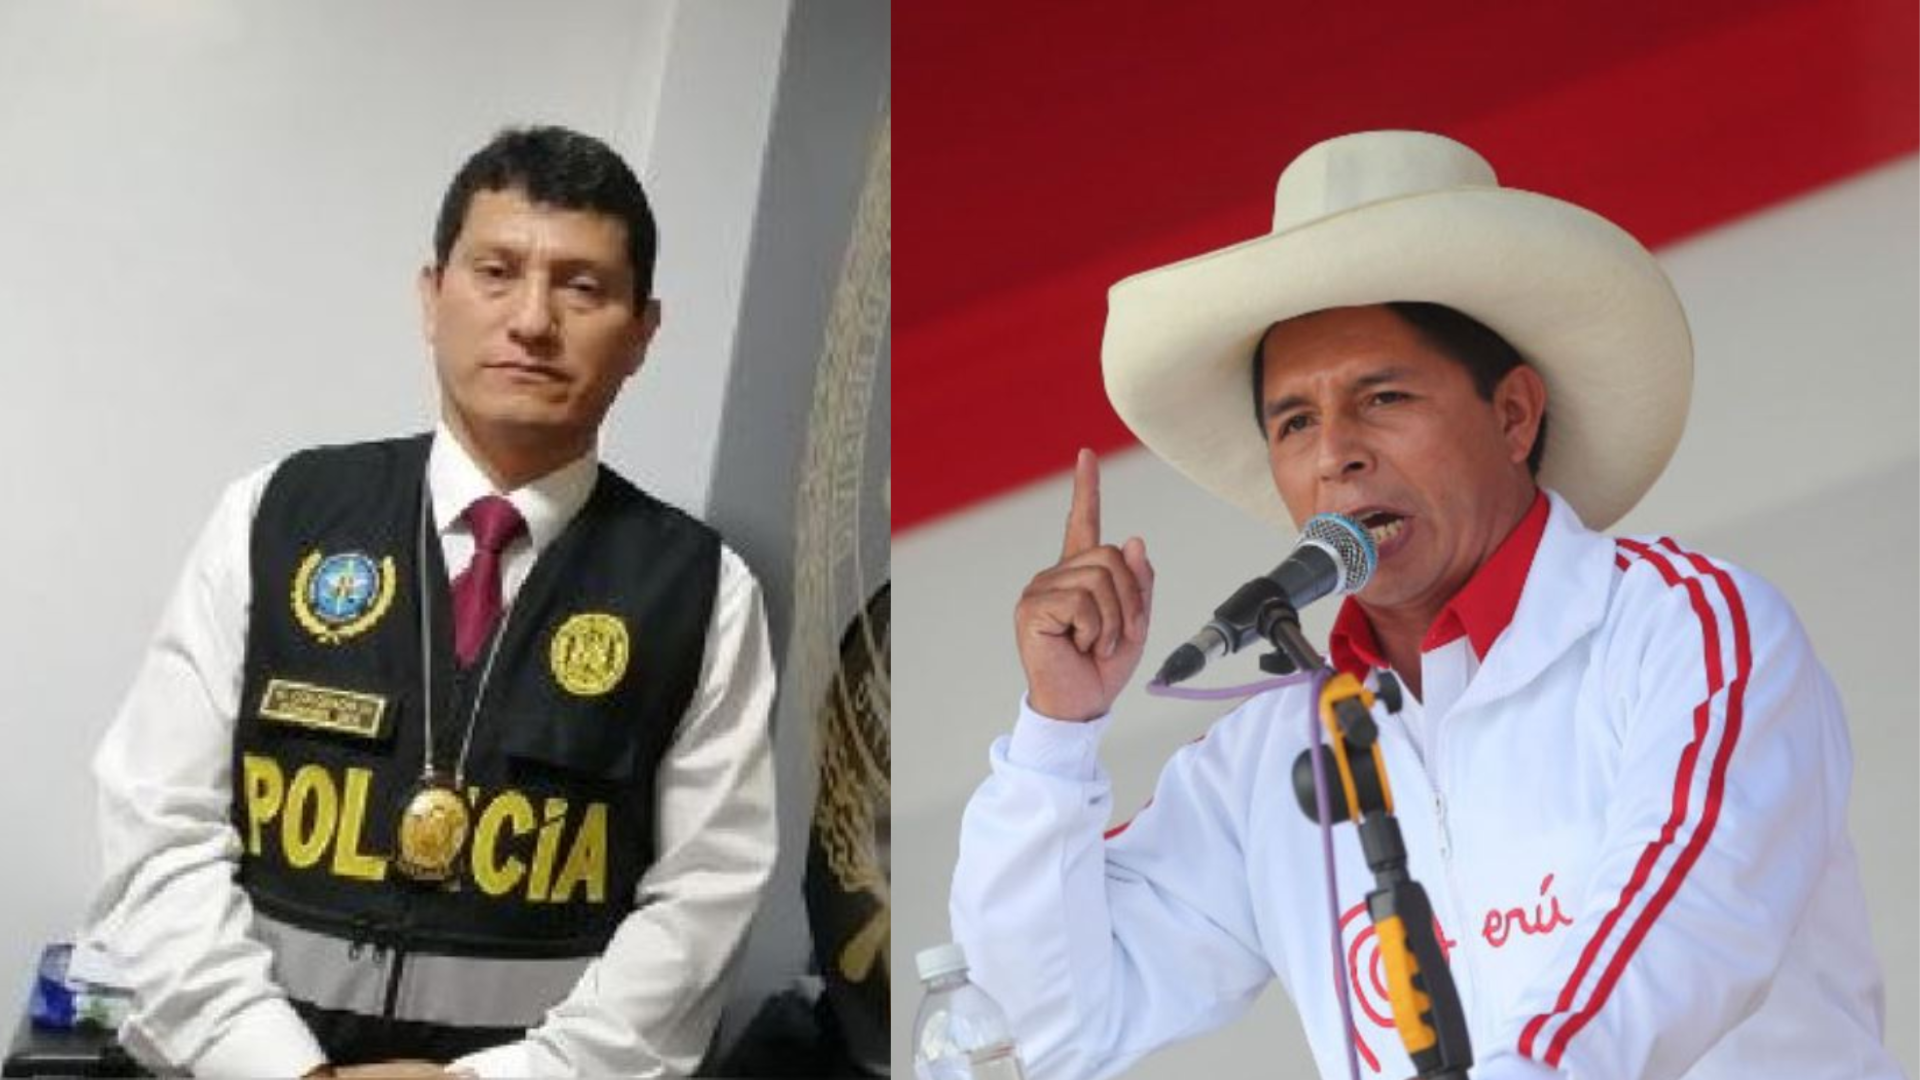 Pedro Castillo pide destitución y proceso sancionador contra coronel PNP Harvey Colchado por presunta falta grave.
Foto: Agencia Andina/Composición Infobae